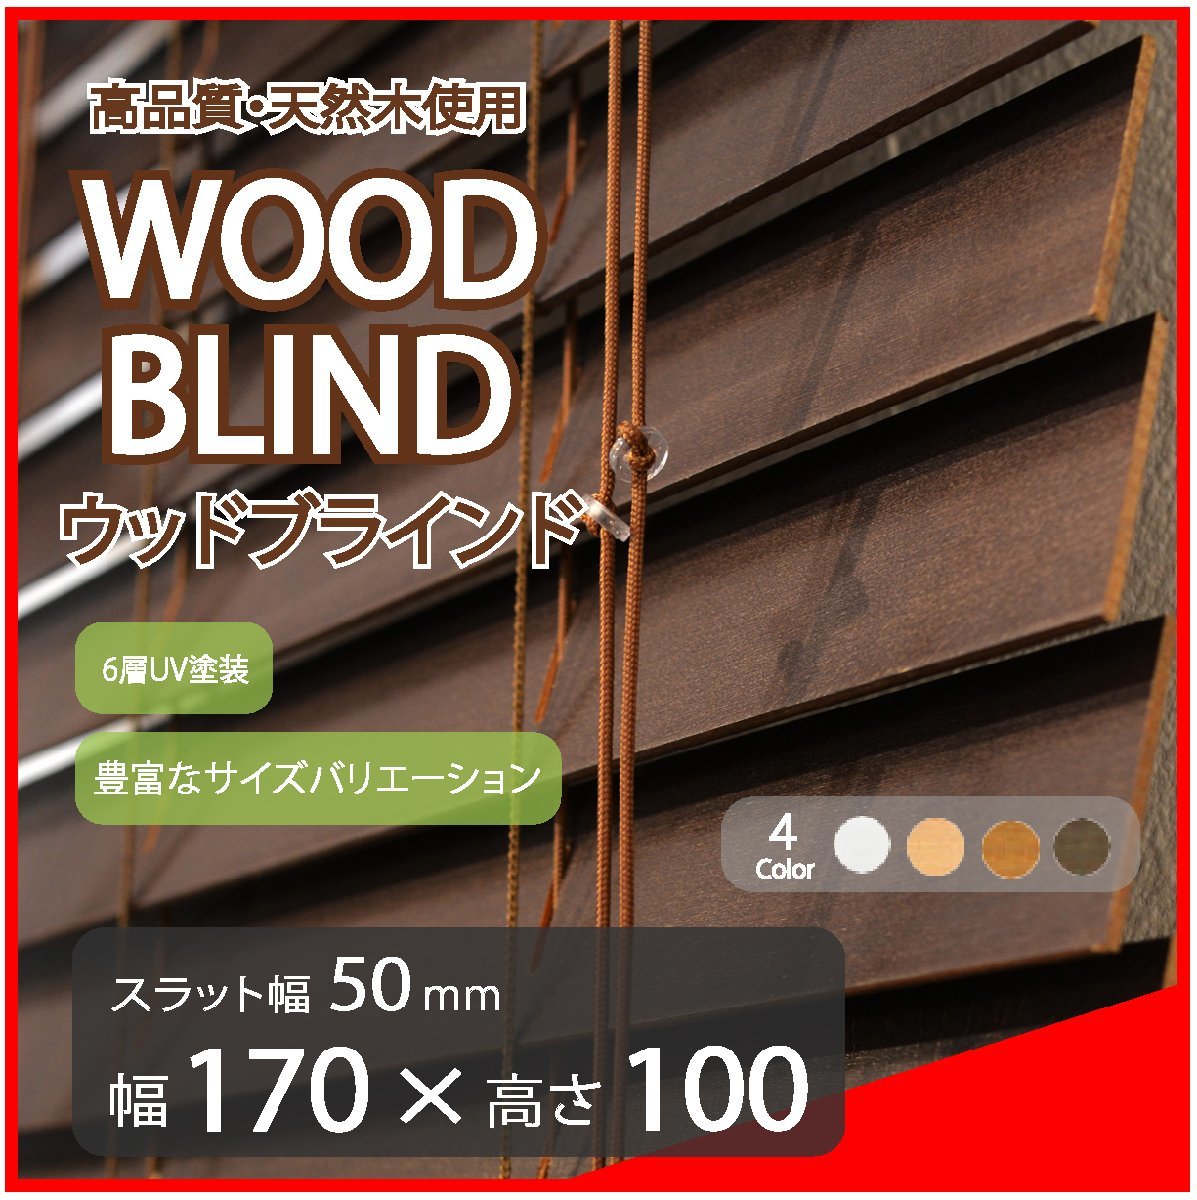 高品質 ウッドブラインド 木製 ブラインド 既成サイズ スラット(羽根)幅50mm 幅170cm×高さ100cm ダークの画像1